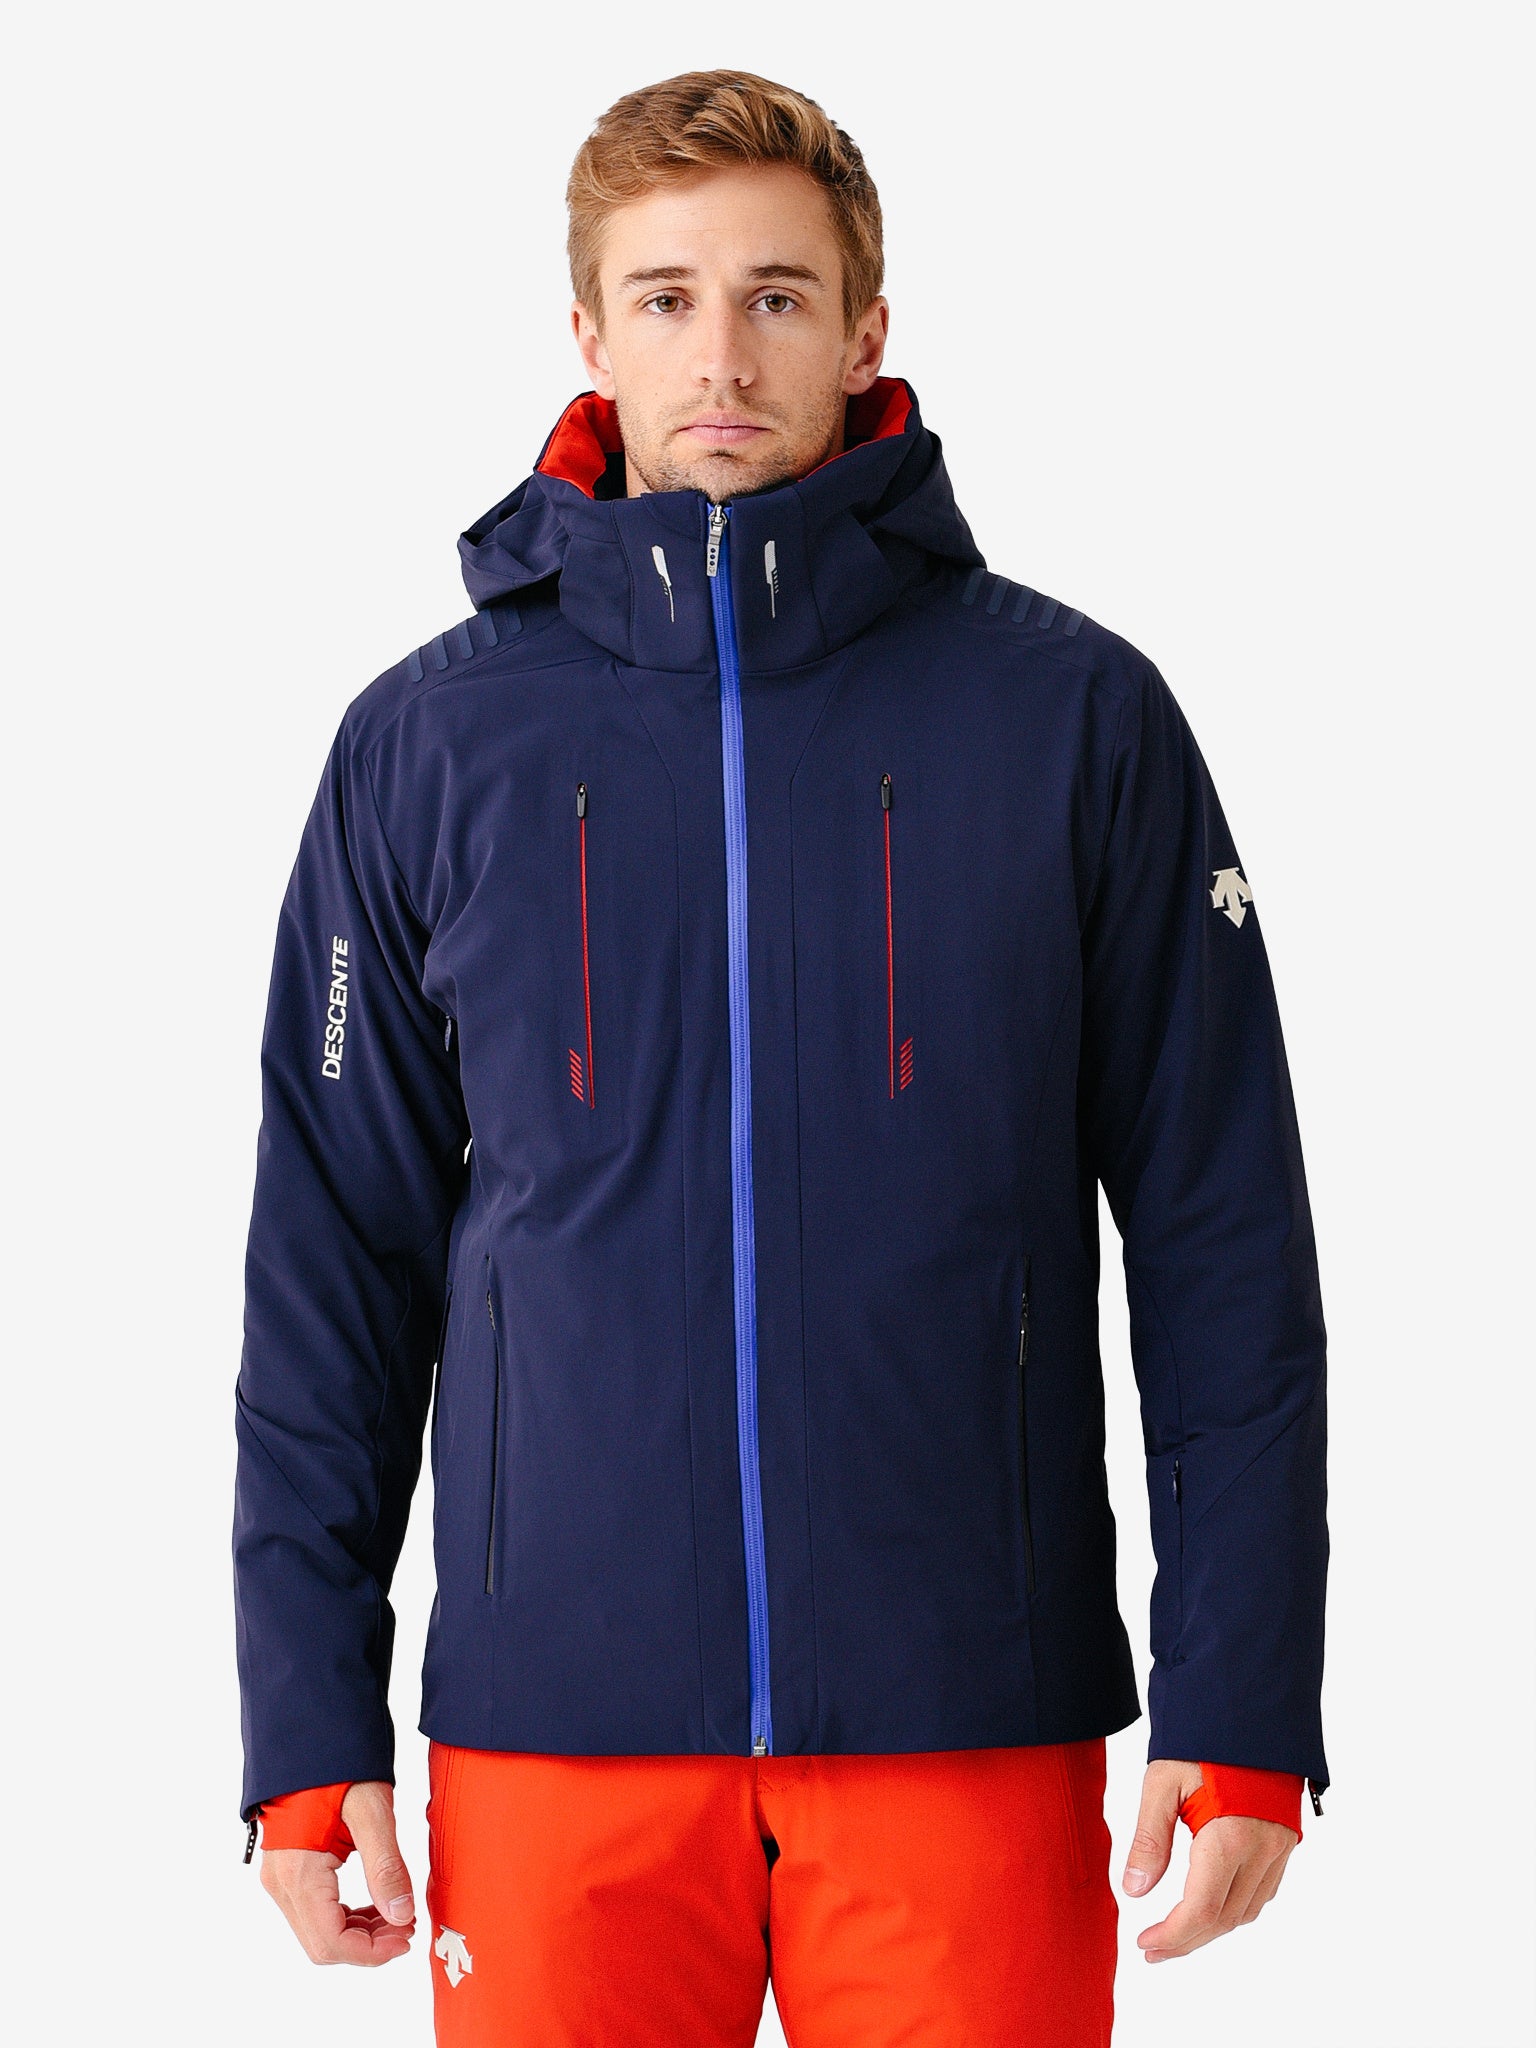 Chaqueta de esquí - Hombre - Descente Breck Insulated - DWMQGK09 55